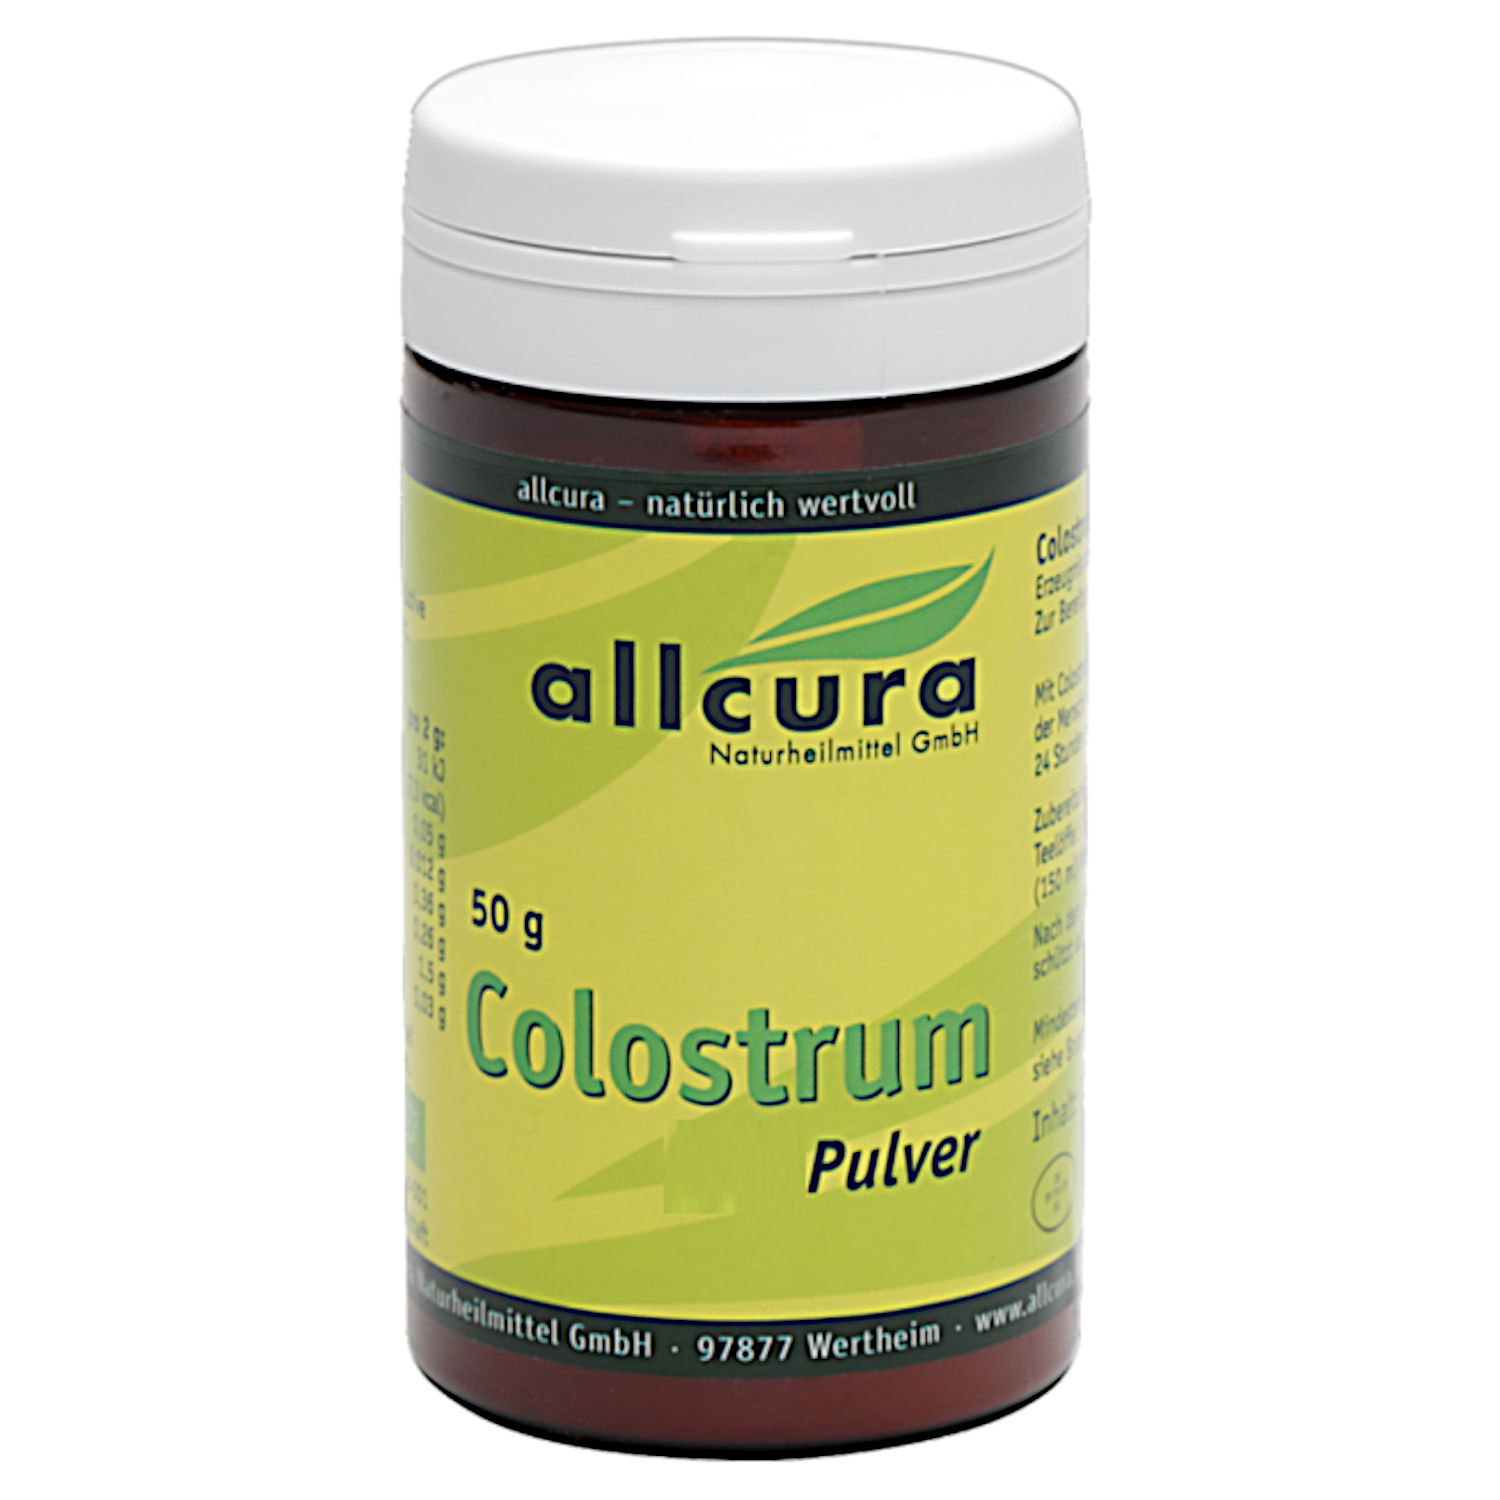 Colostrum Pulver von Allcura - 50g